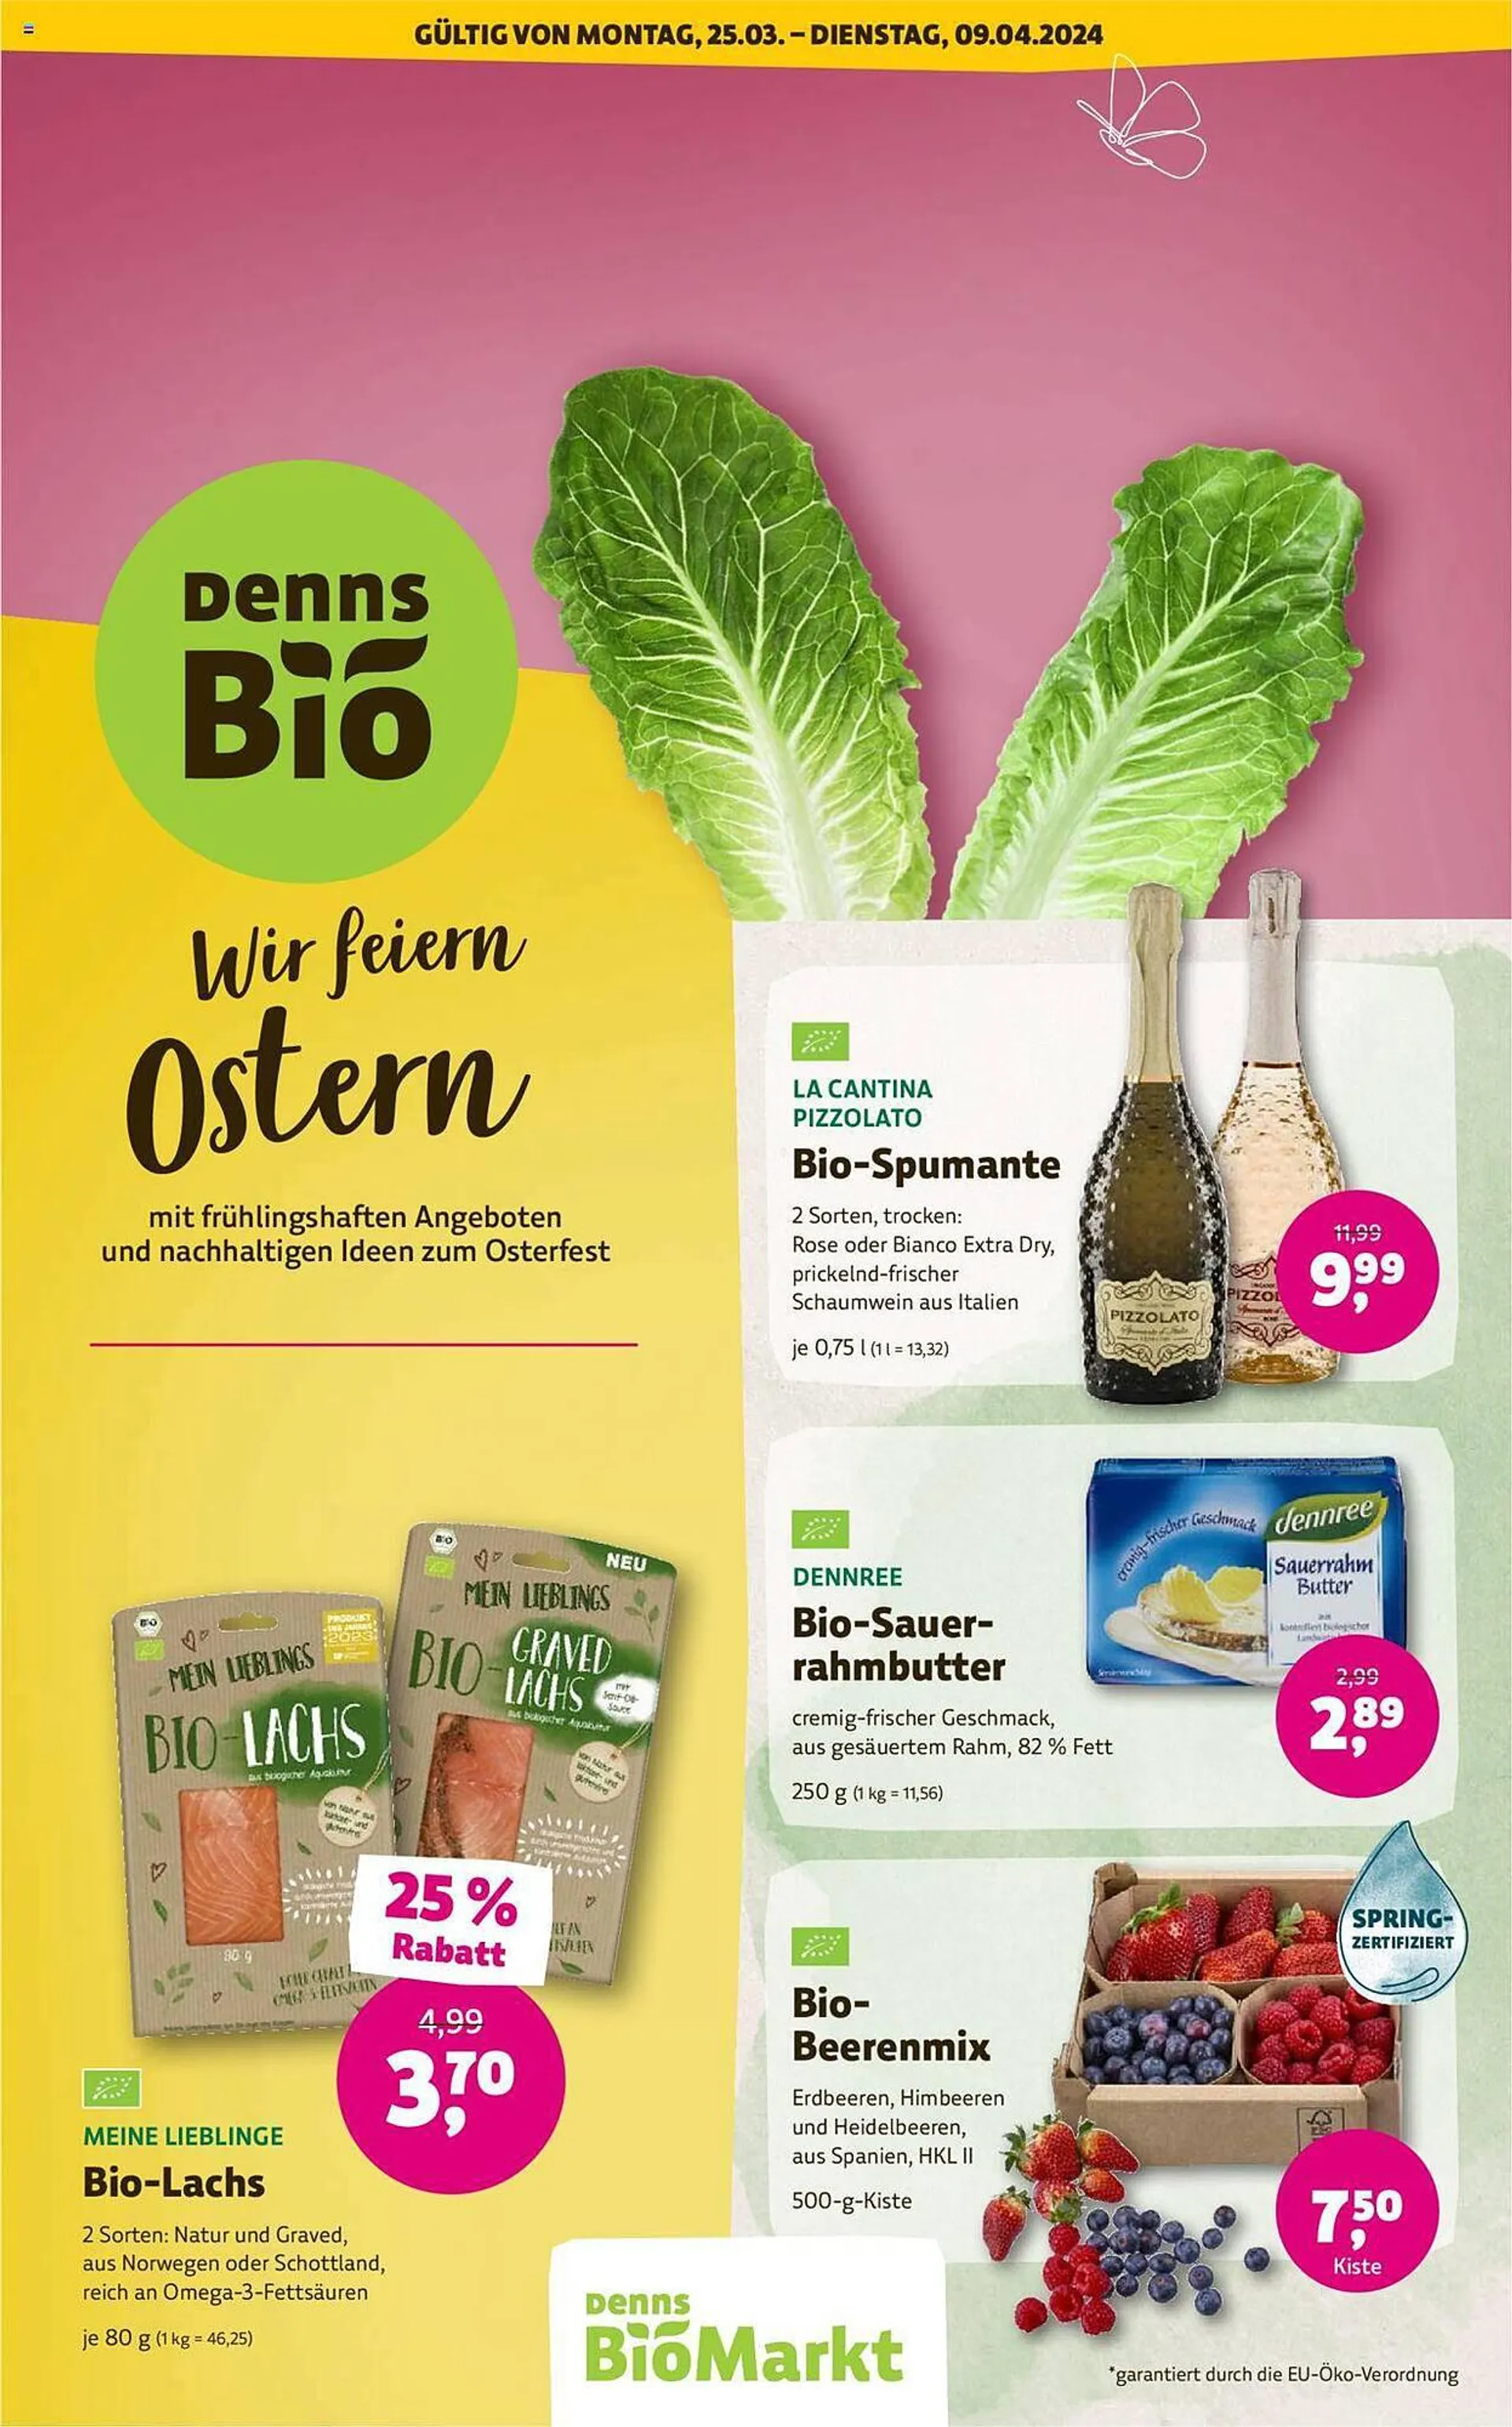 Denn's Biomarkt Flugblatt von 25. März bis 9. April 2024 - Flugblätt seite  